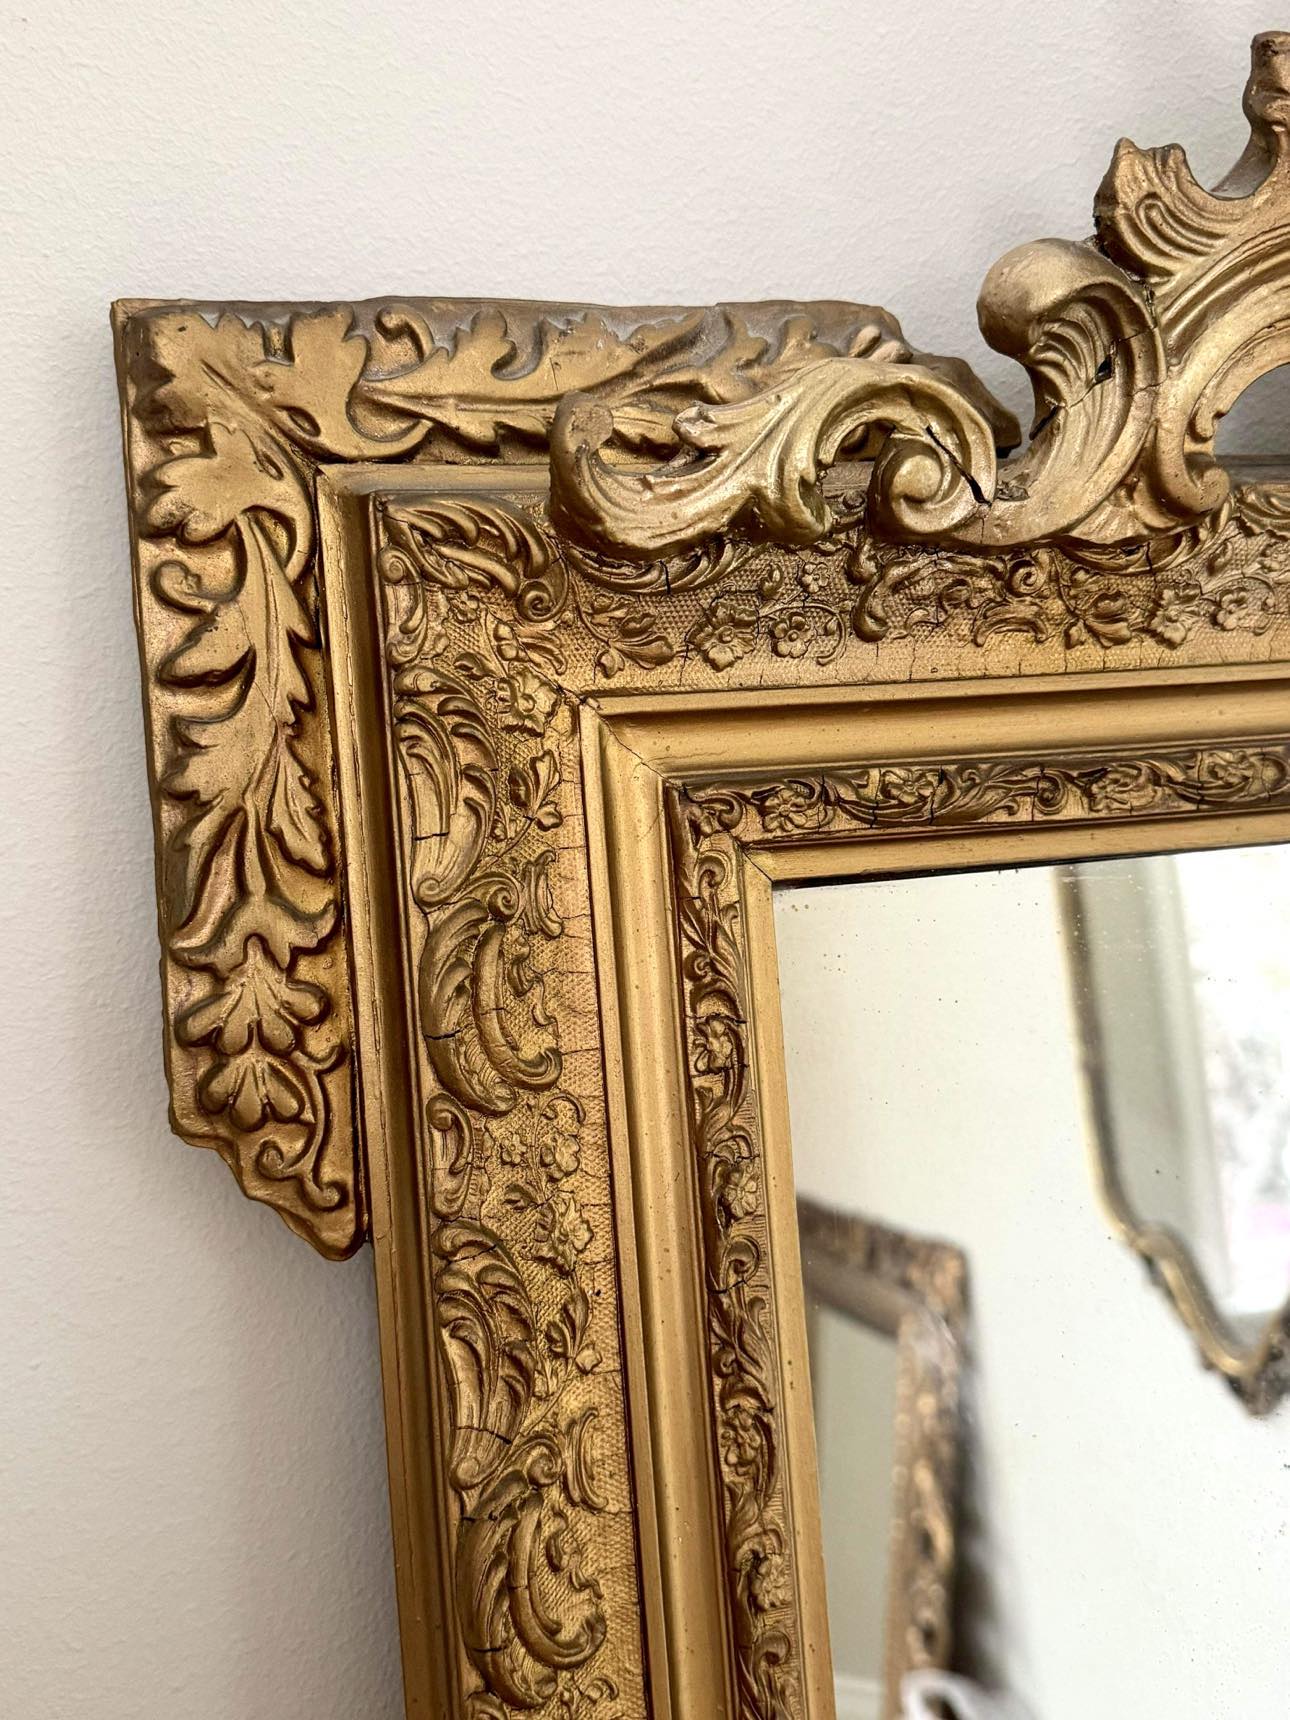 Golden mirror wooden frame